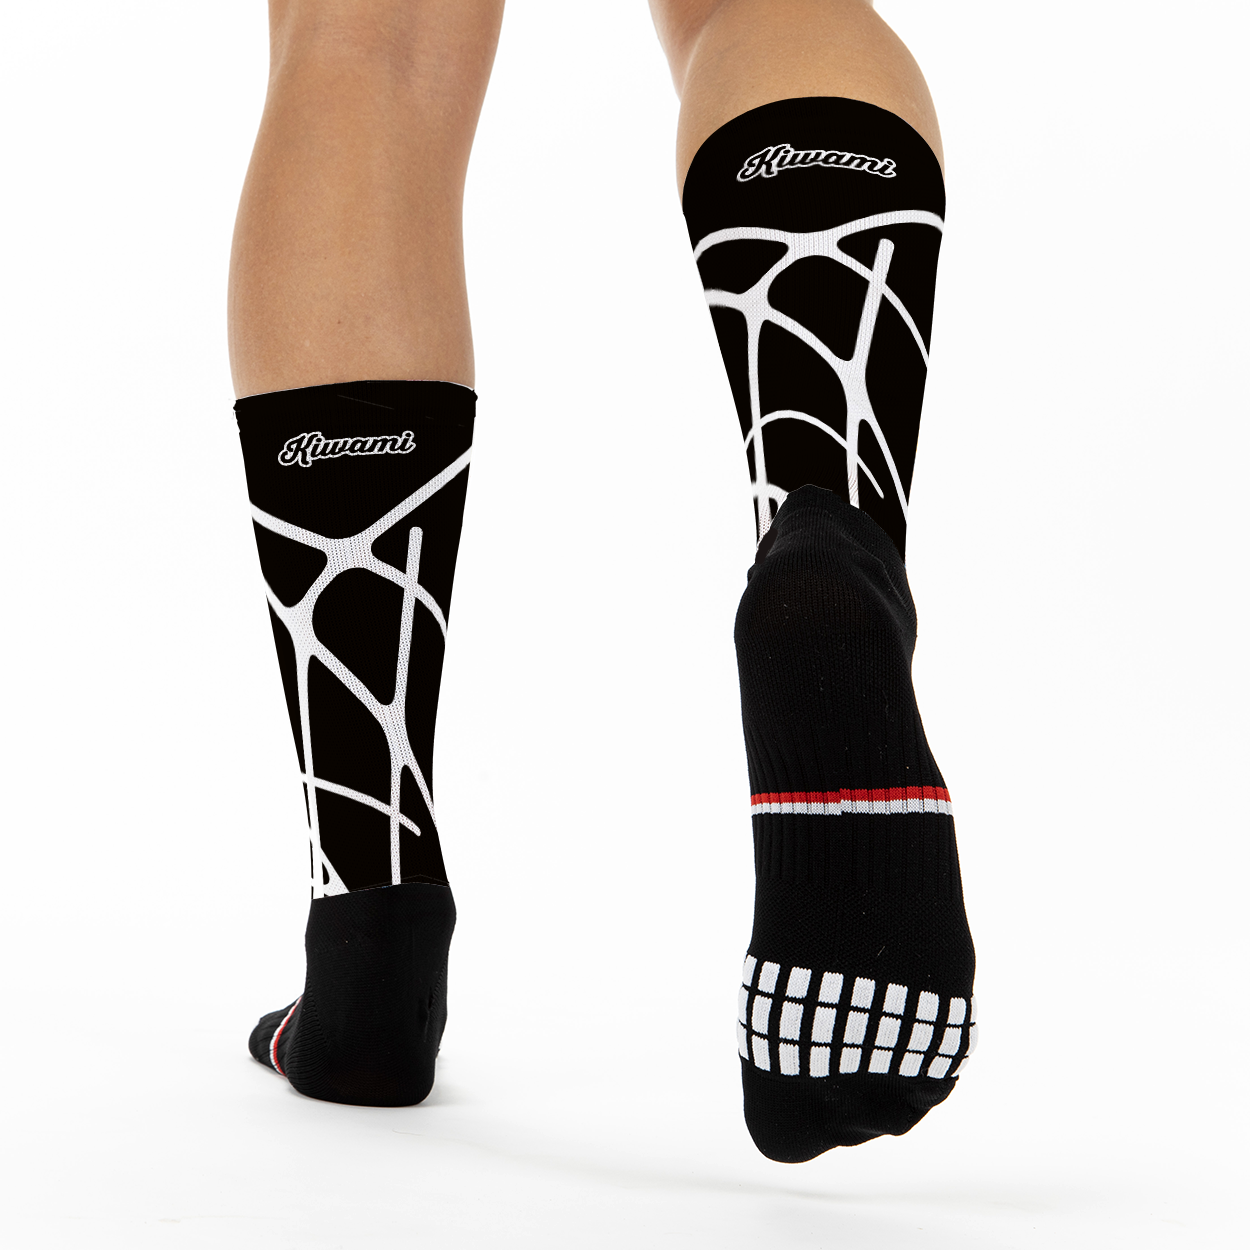 running socks -kiwami sports - 20 anniversary- triathlon-triathlete-spider socks-